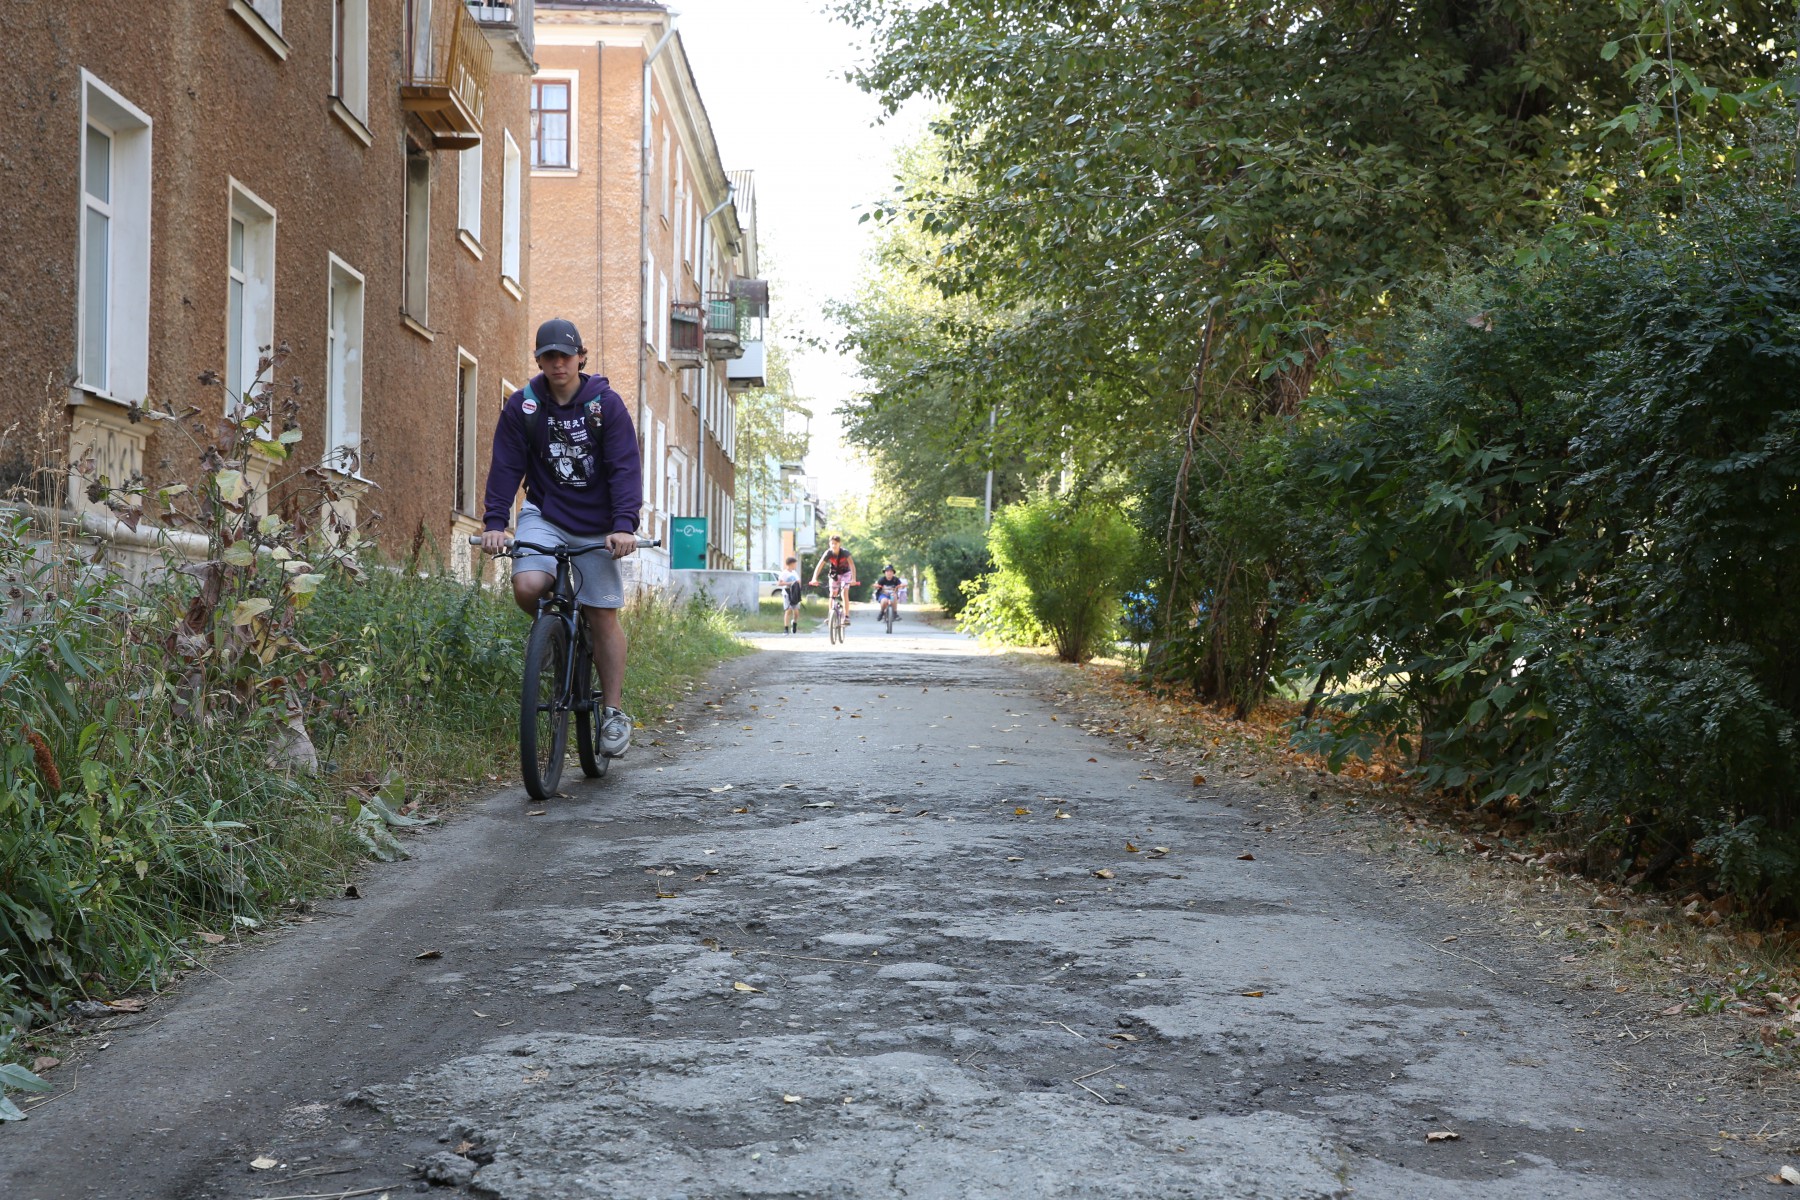 Ревдинские тротуары, к сожалению, для самокатов не приспособлены — даже велосипеды с трудом проезжают по этим буеракам. Фото Владимира Коцюбы-Белых